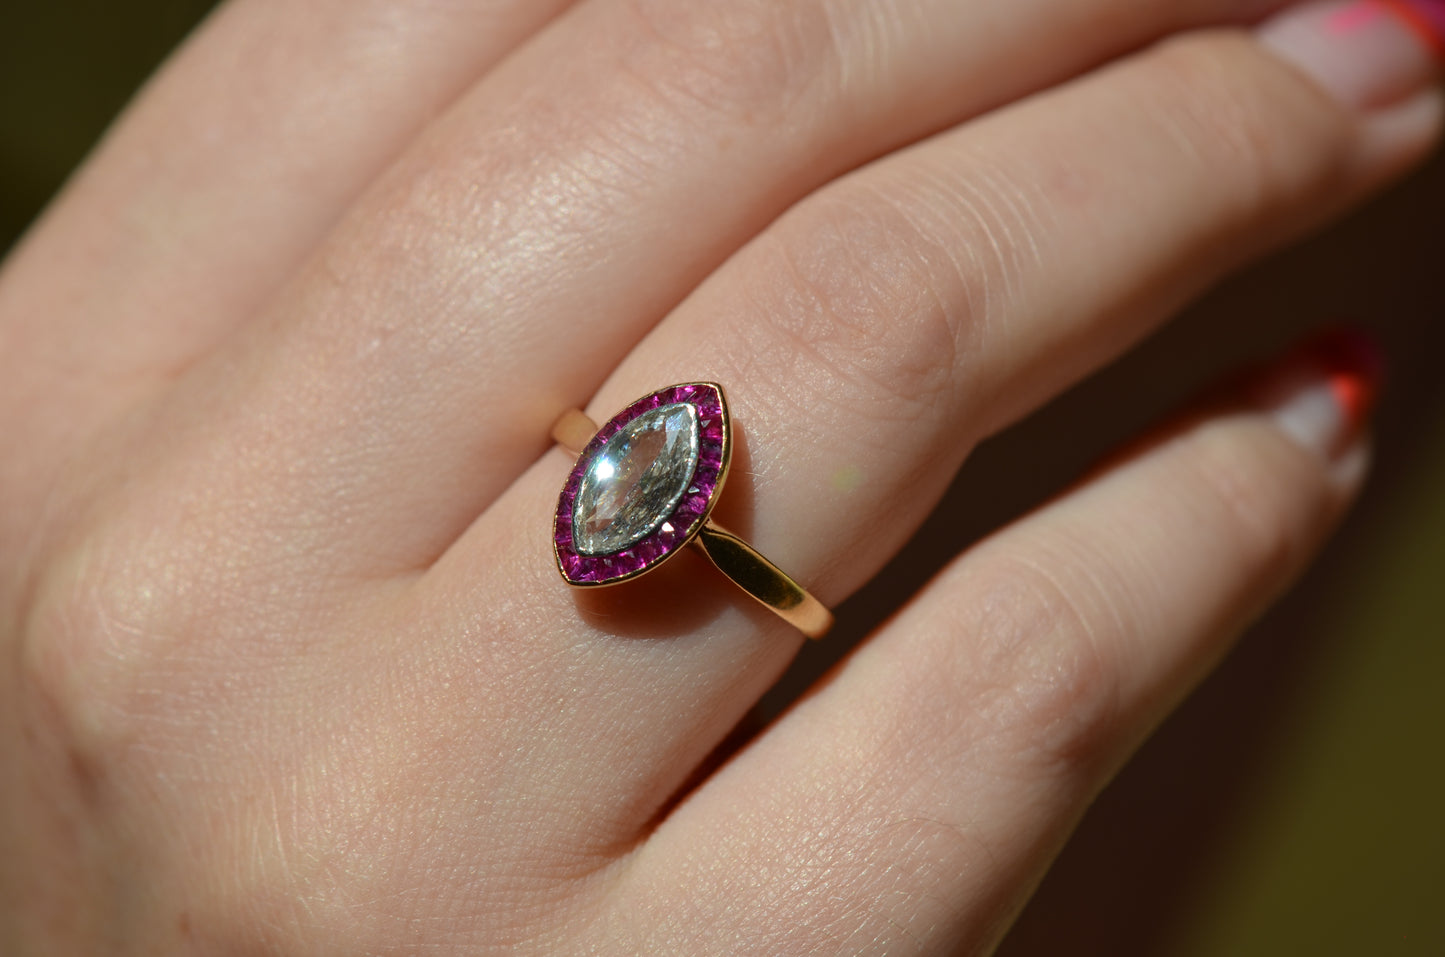 Ravishing French Art Deco Ruby Target Ring